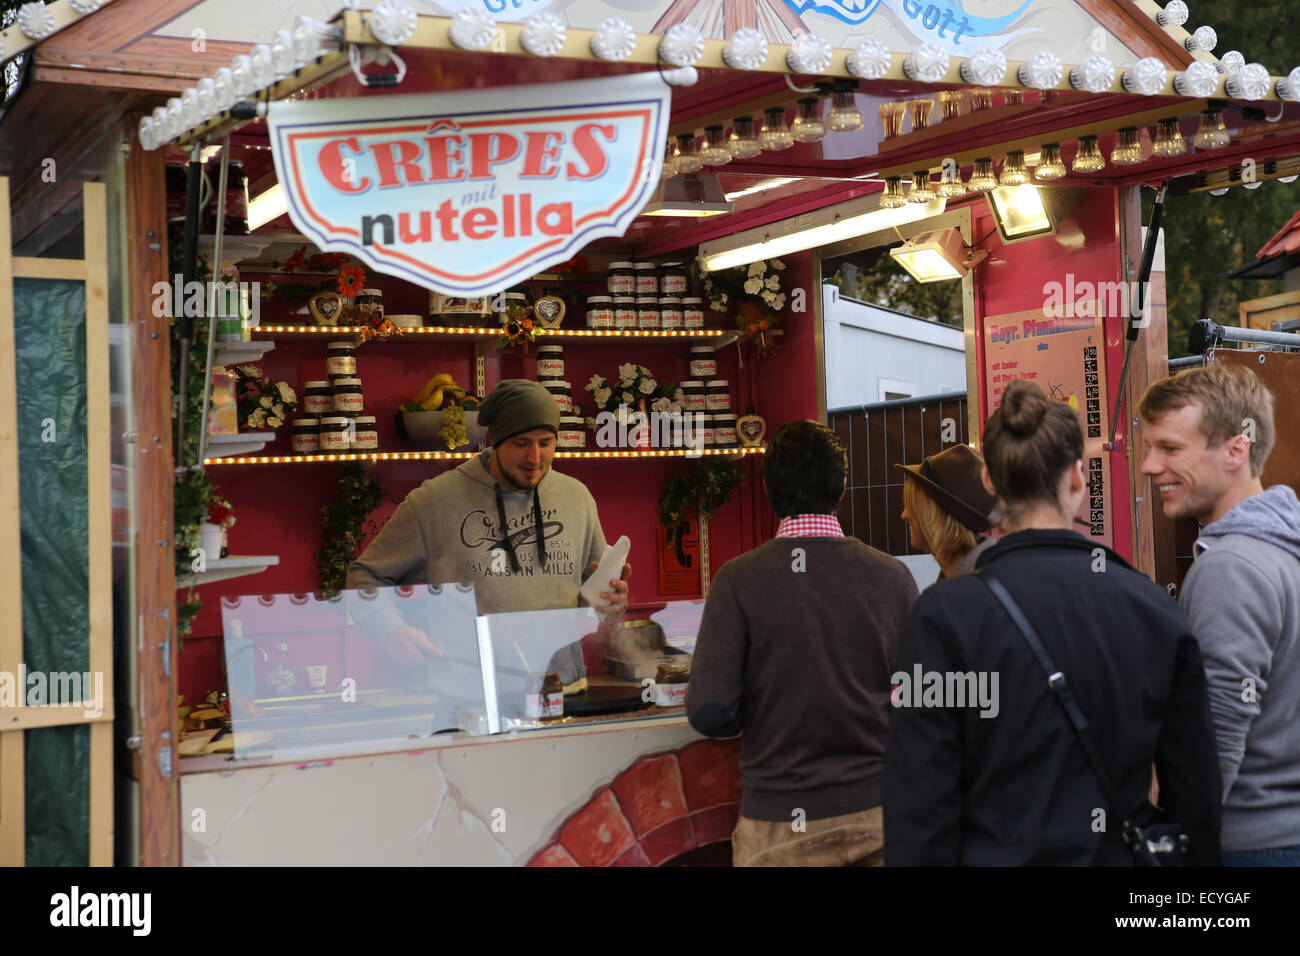 La vente du vendeur crêpes nutella europe allemagne Banque D'Images